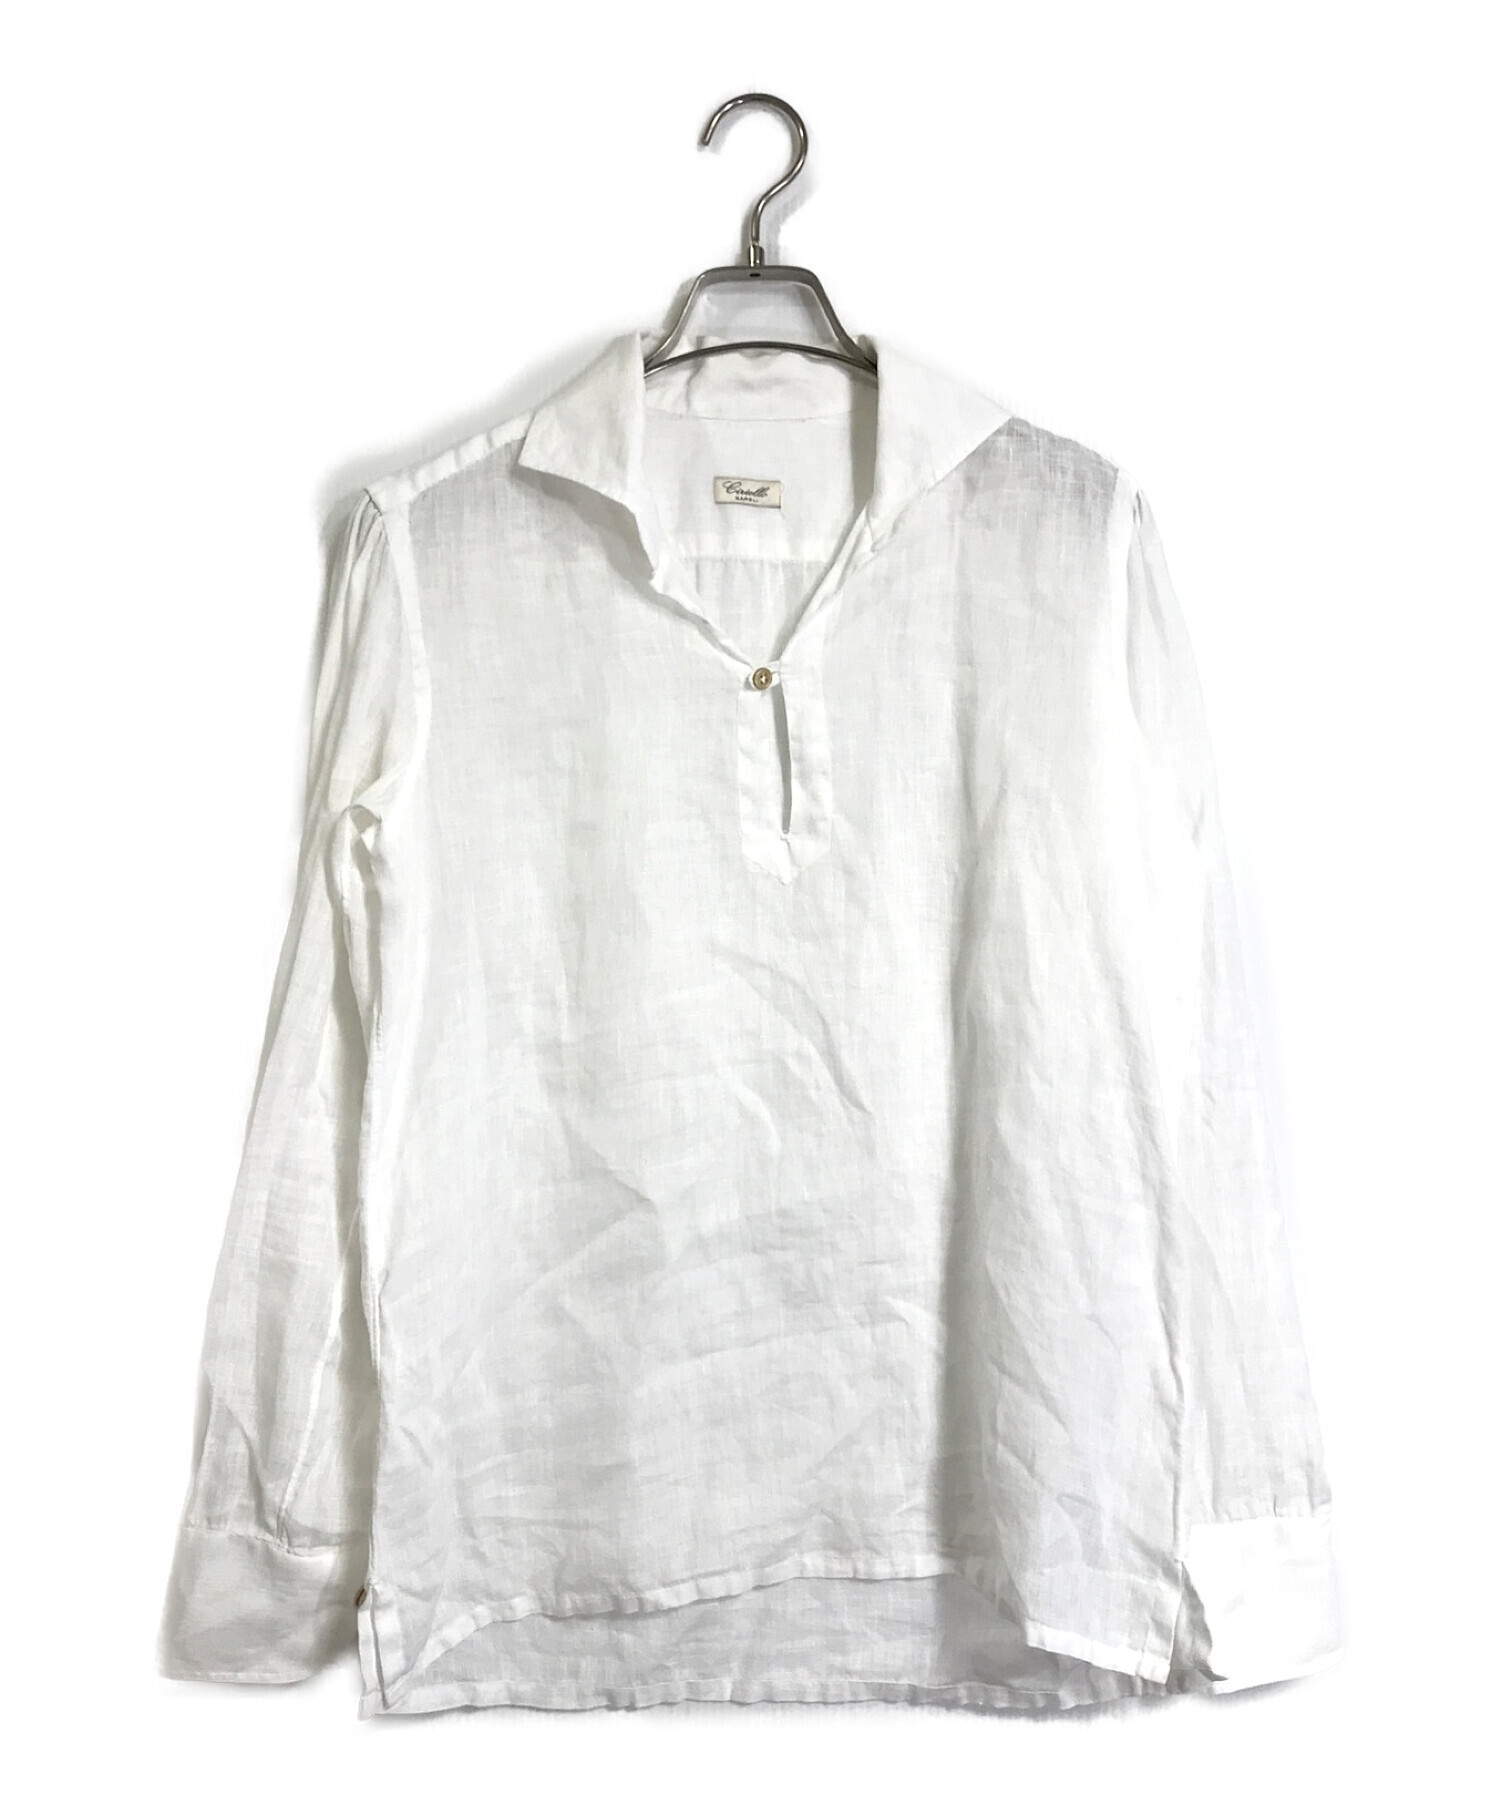 Ciriello (チリエッロ) リネンカプリシャツ ホワイト サイズ:XS